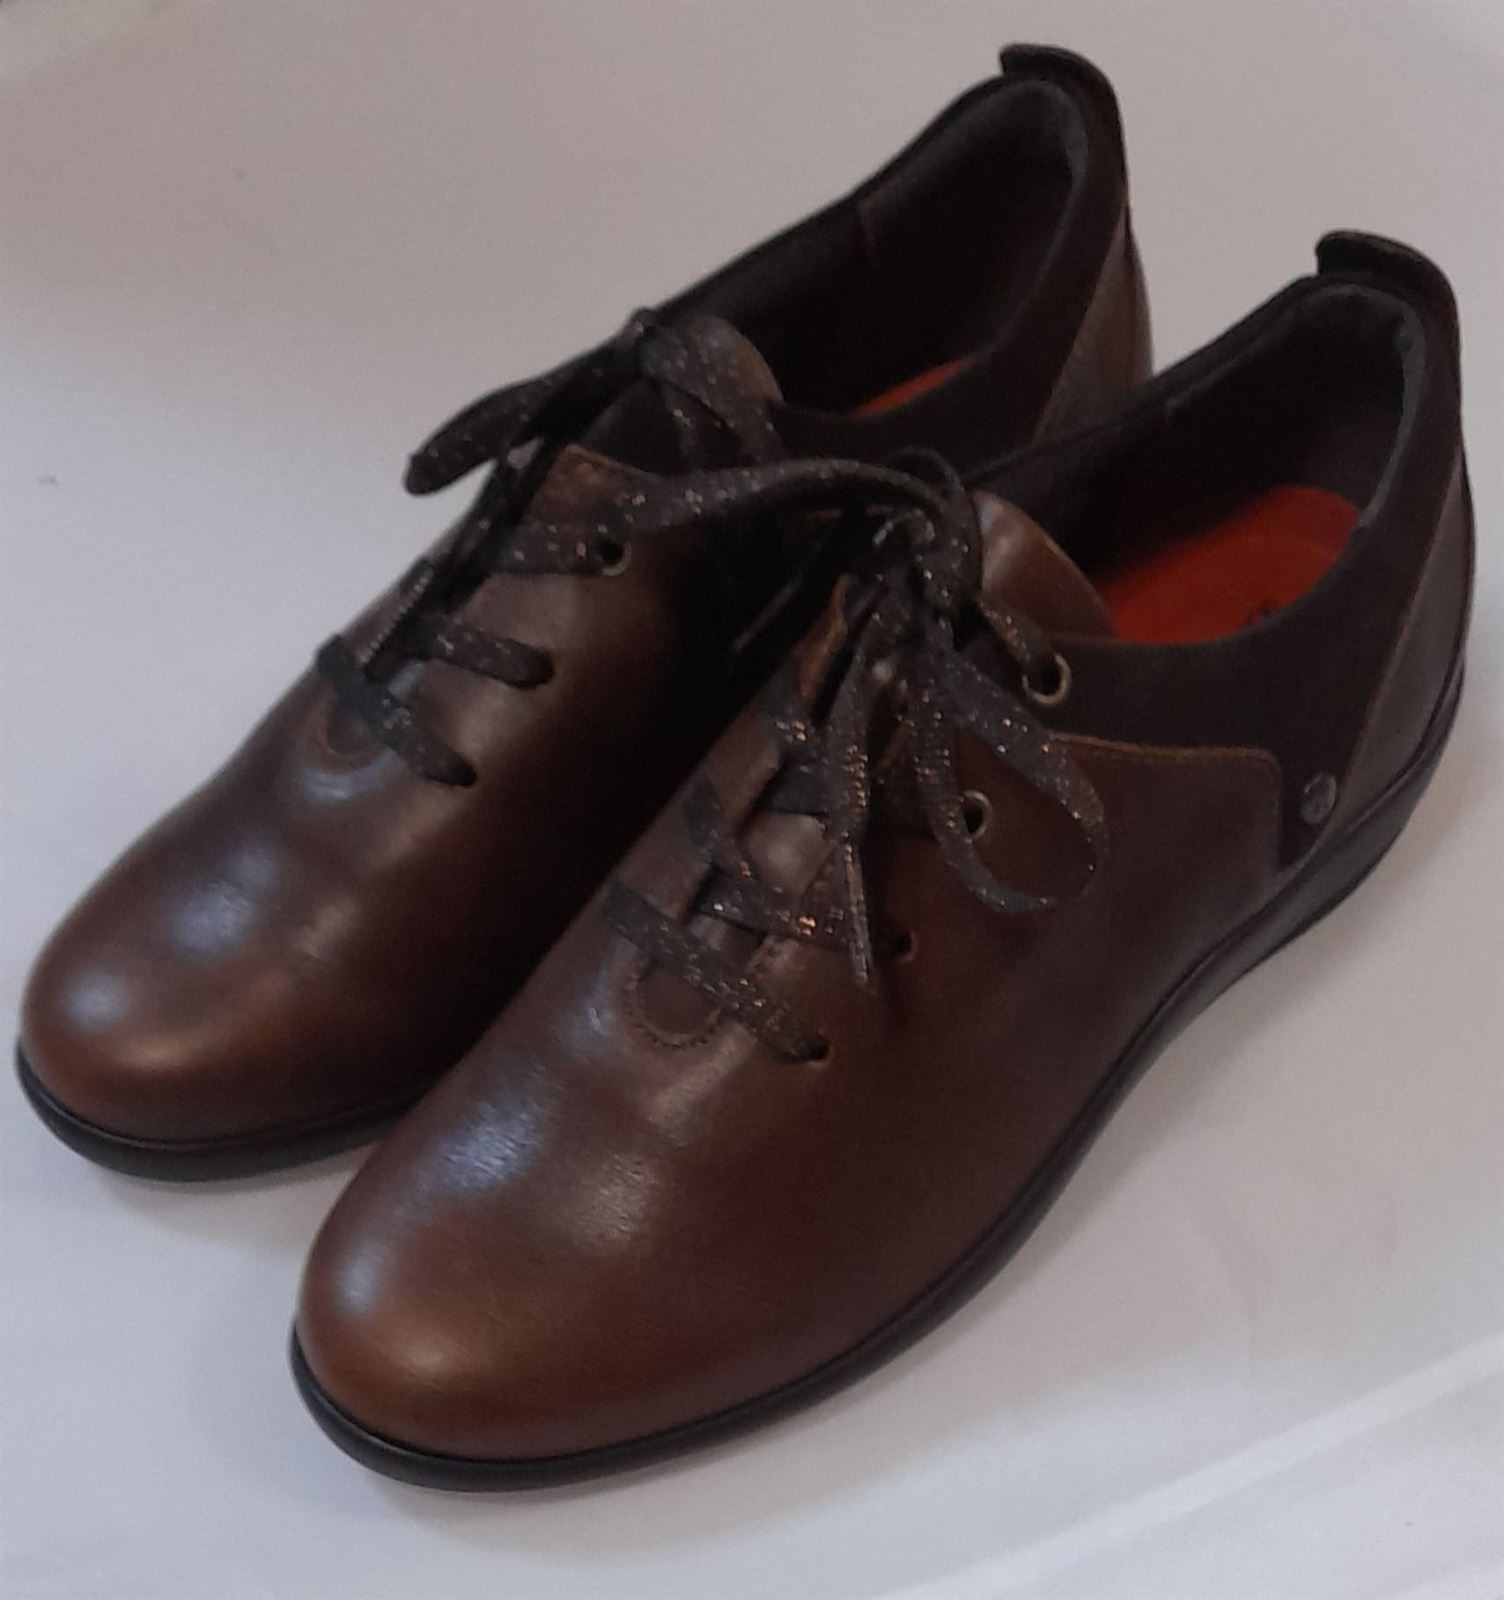 Zapato marrón cordones - Imagen 2